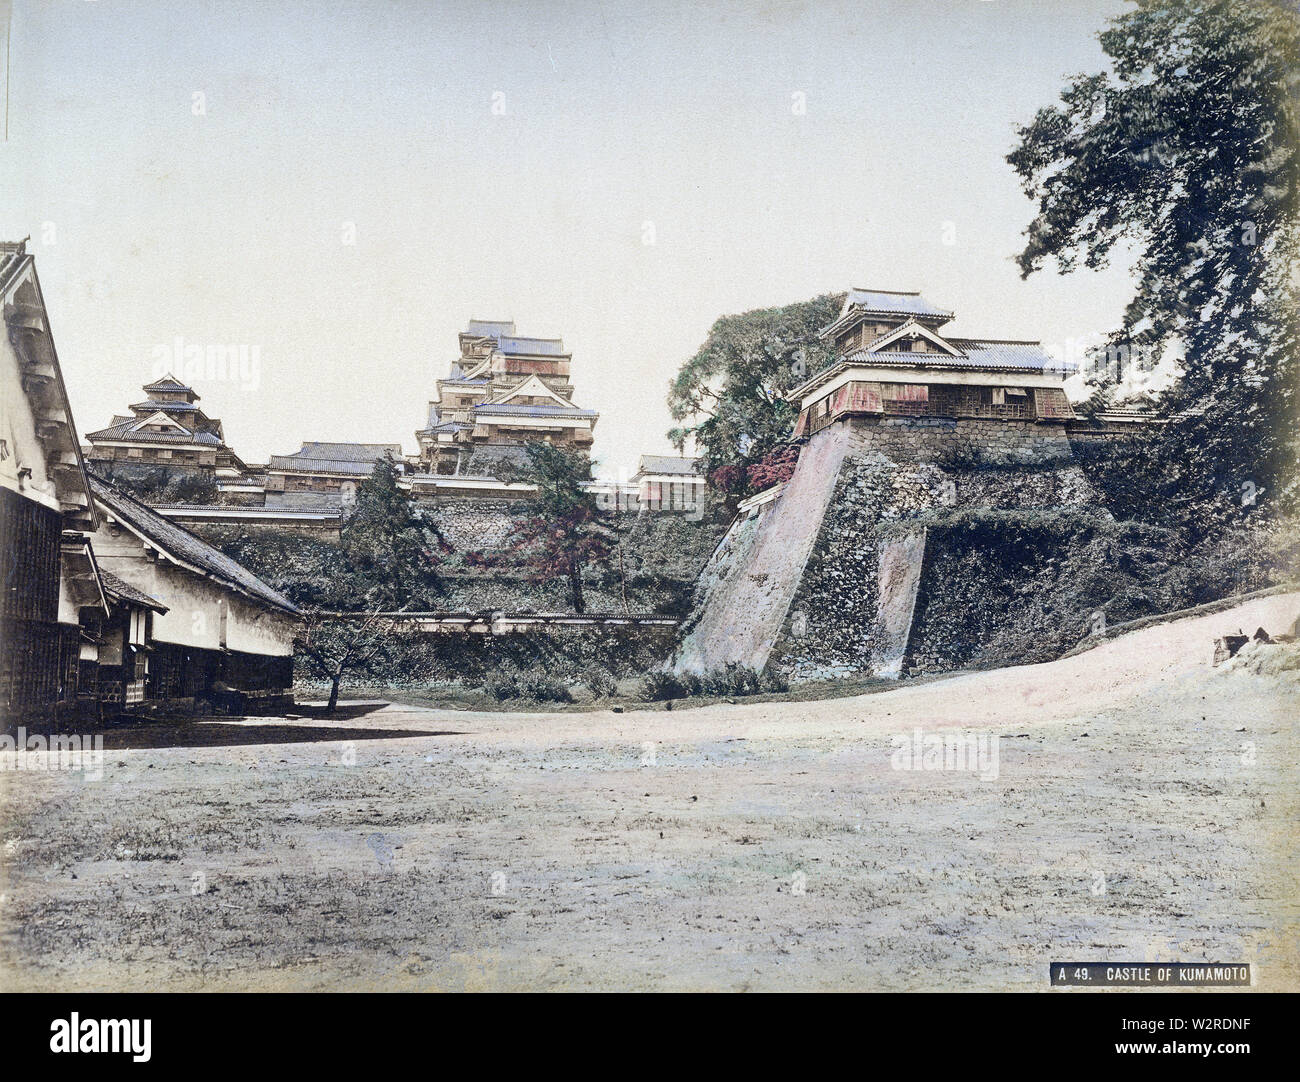 [1870s Japan - Kumamoto Castle] - Schloss Kumamoto in Kumamoto, früher als Higo Province, ca 1872 (Meiji 5). Die Ursprünge der Burg datieren zurück bis 1467. Die aktuelle tenshukaku (Bergfried) ist eine konkrete replica Baujahr 1960 (Showa 35). 19 Vintage albumen Foto. Stockfoto